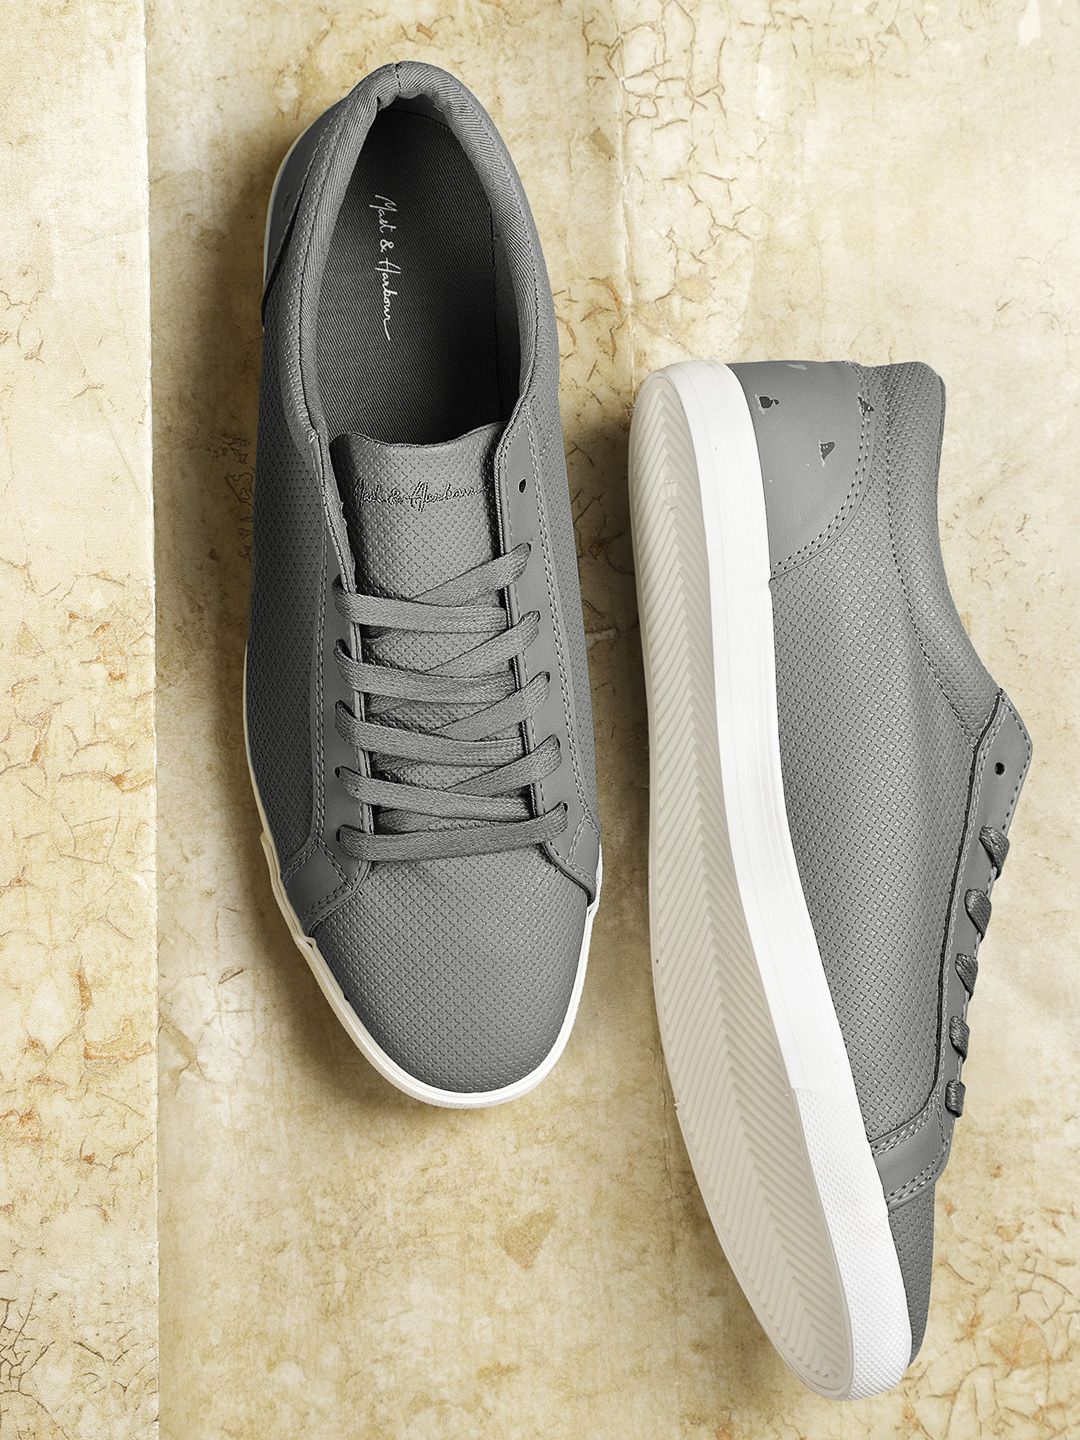 mast & harbour grey sneakers